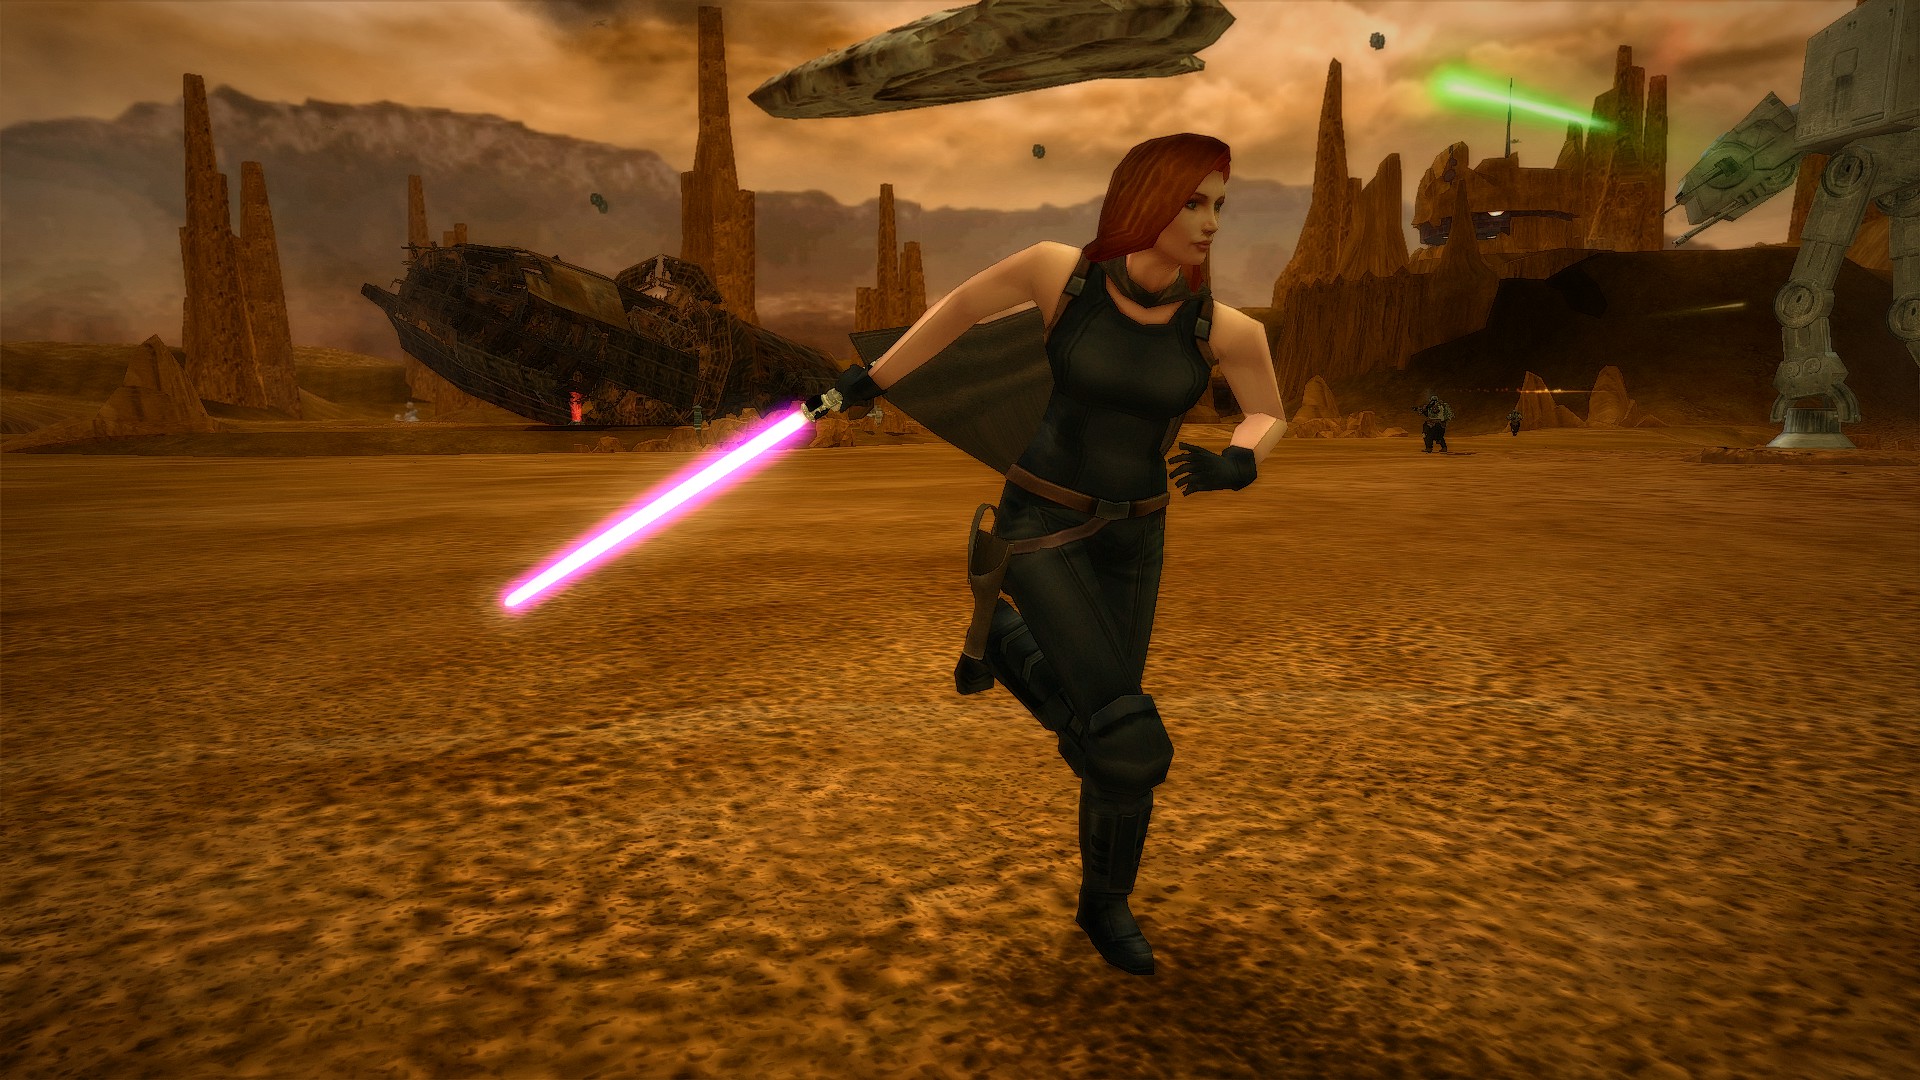 Mara Jade image Wars Battlefront II: The Thrawn Trilogy mod for Star Wars Battlefront II